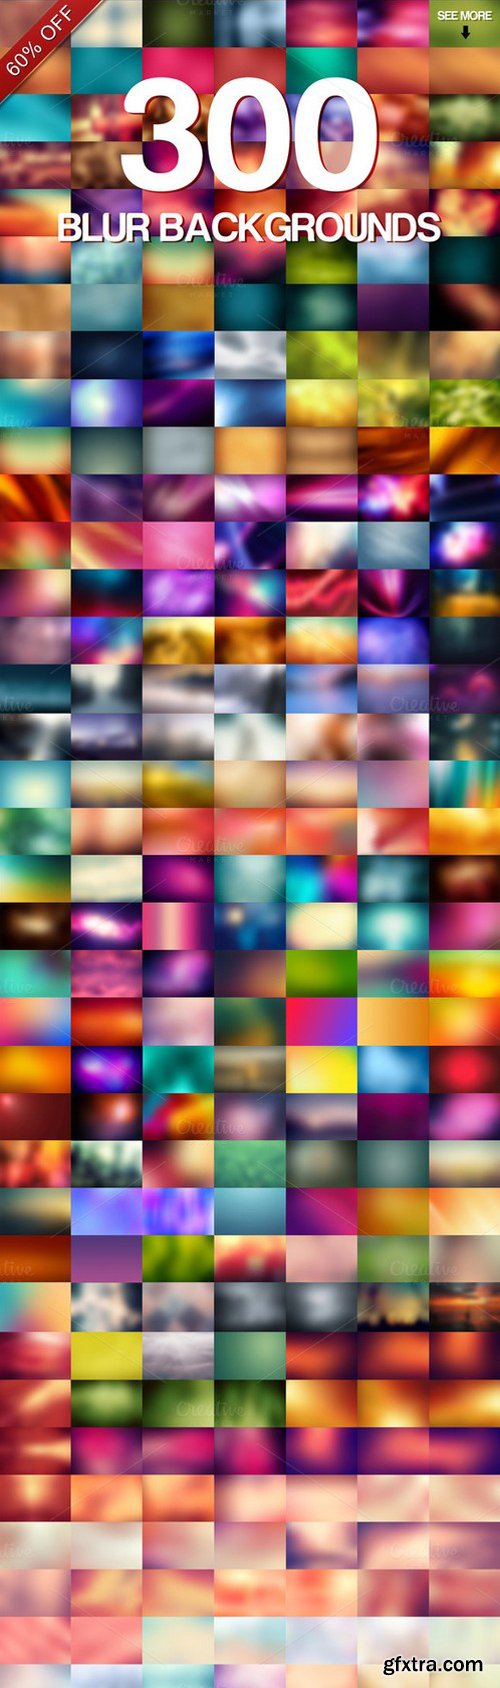 CM - 300 Blur Backgrounds 449342